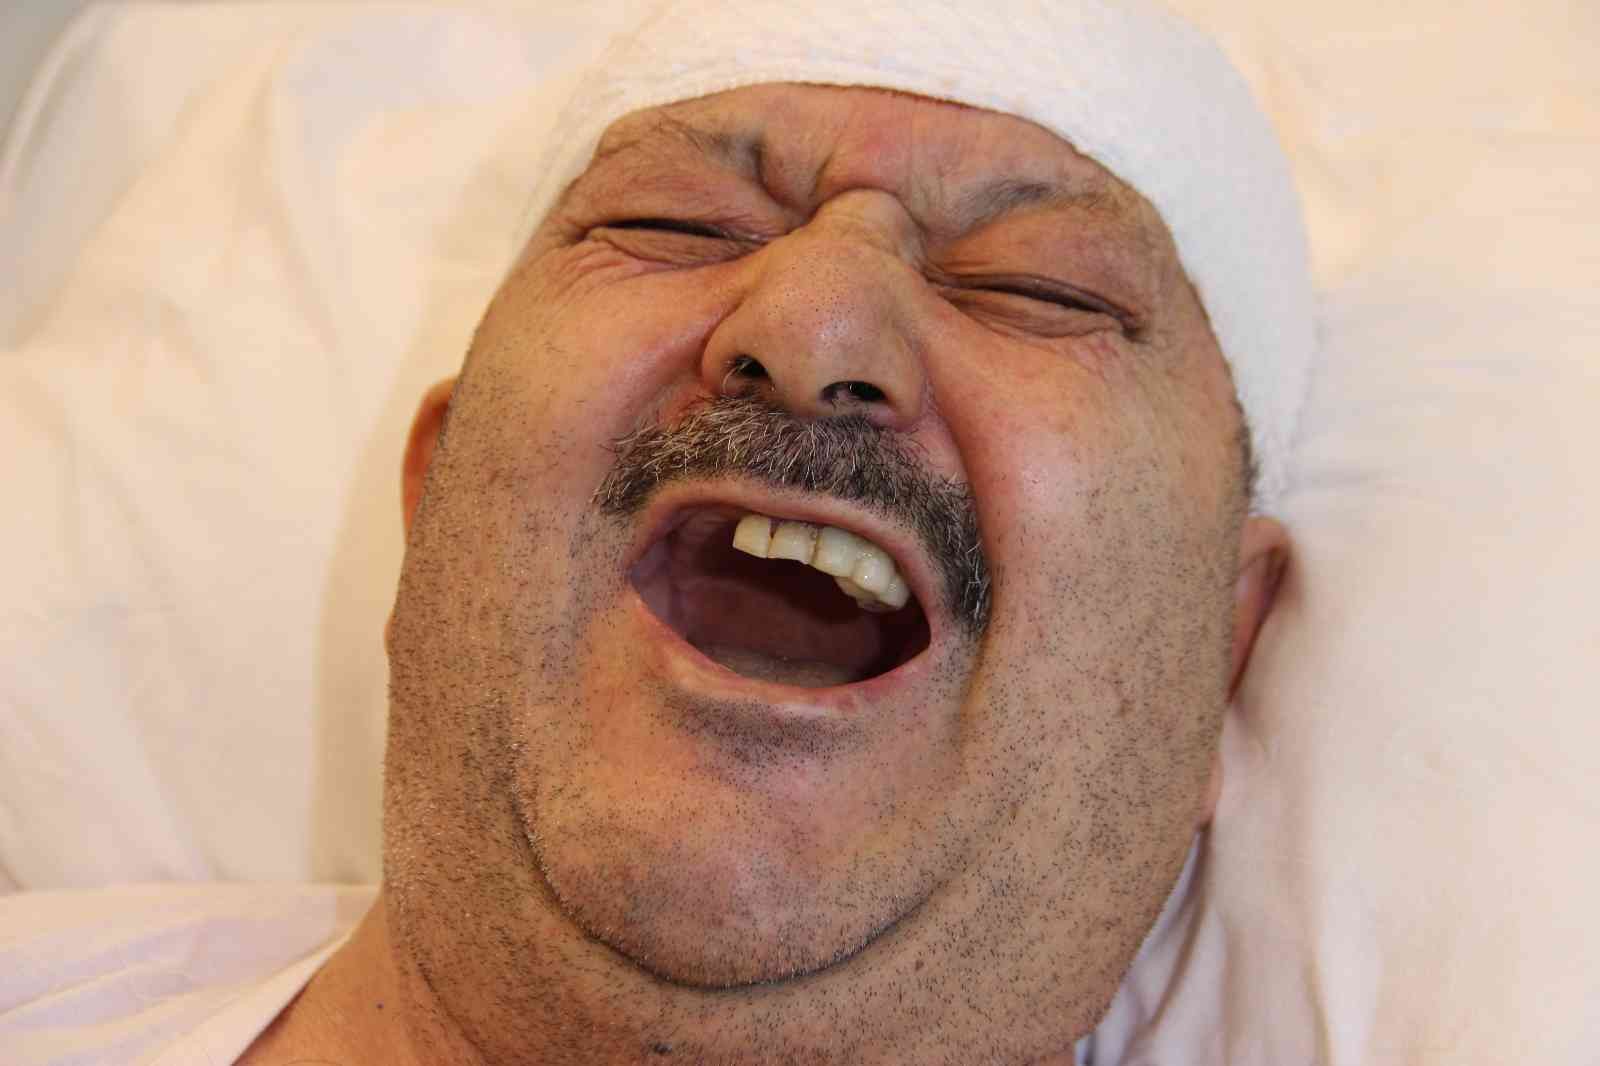 Diş ağrısı sanıp 6 sağlam dişini çektirdi, meğer gerçek bambaşka çıktı #izmir